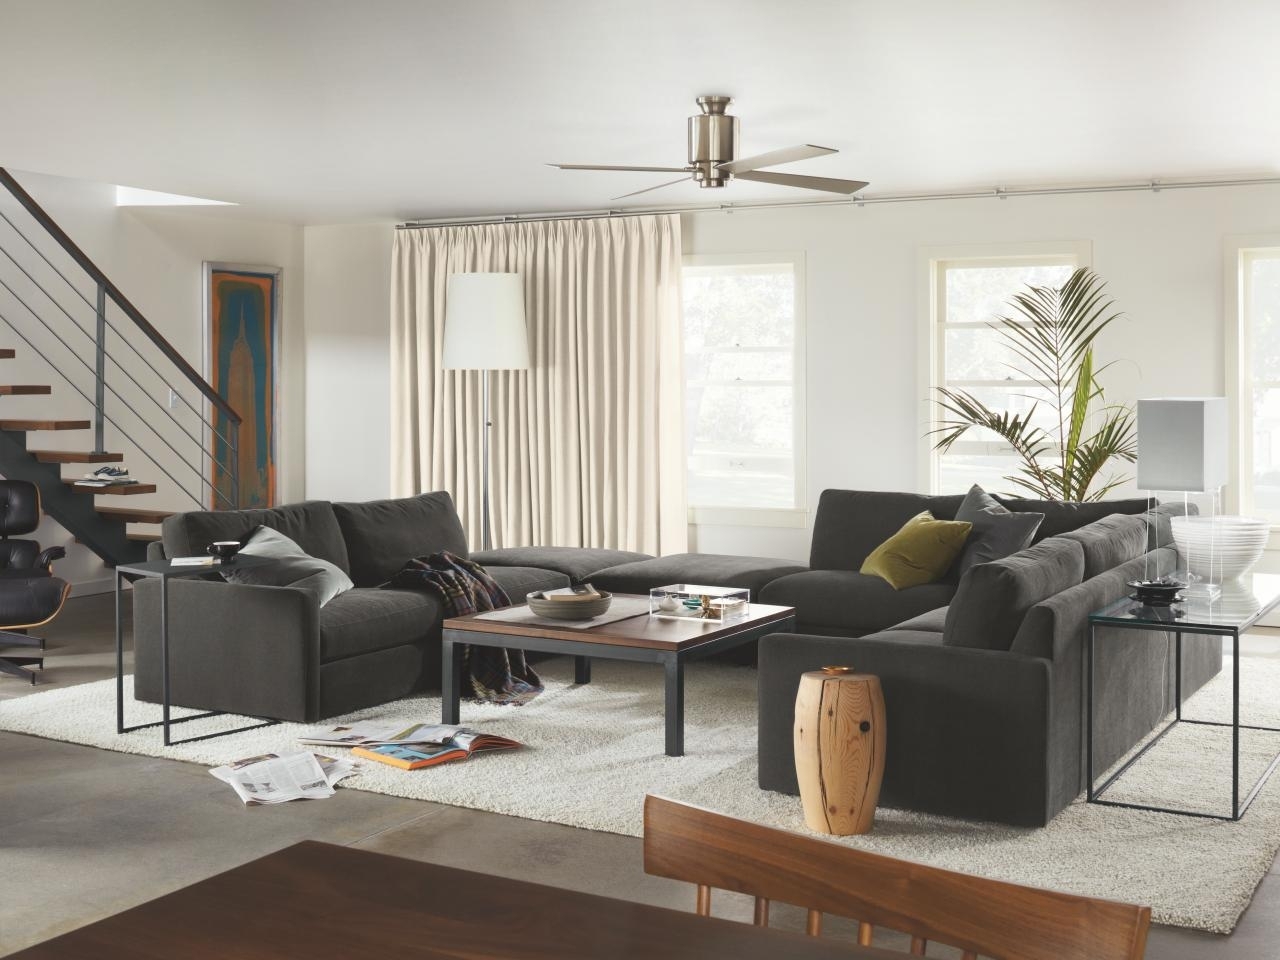 living room modern furniture arrangement ideas